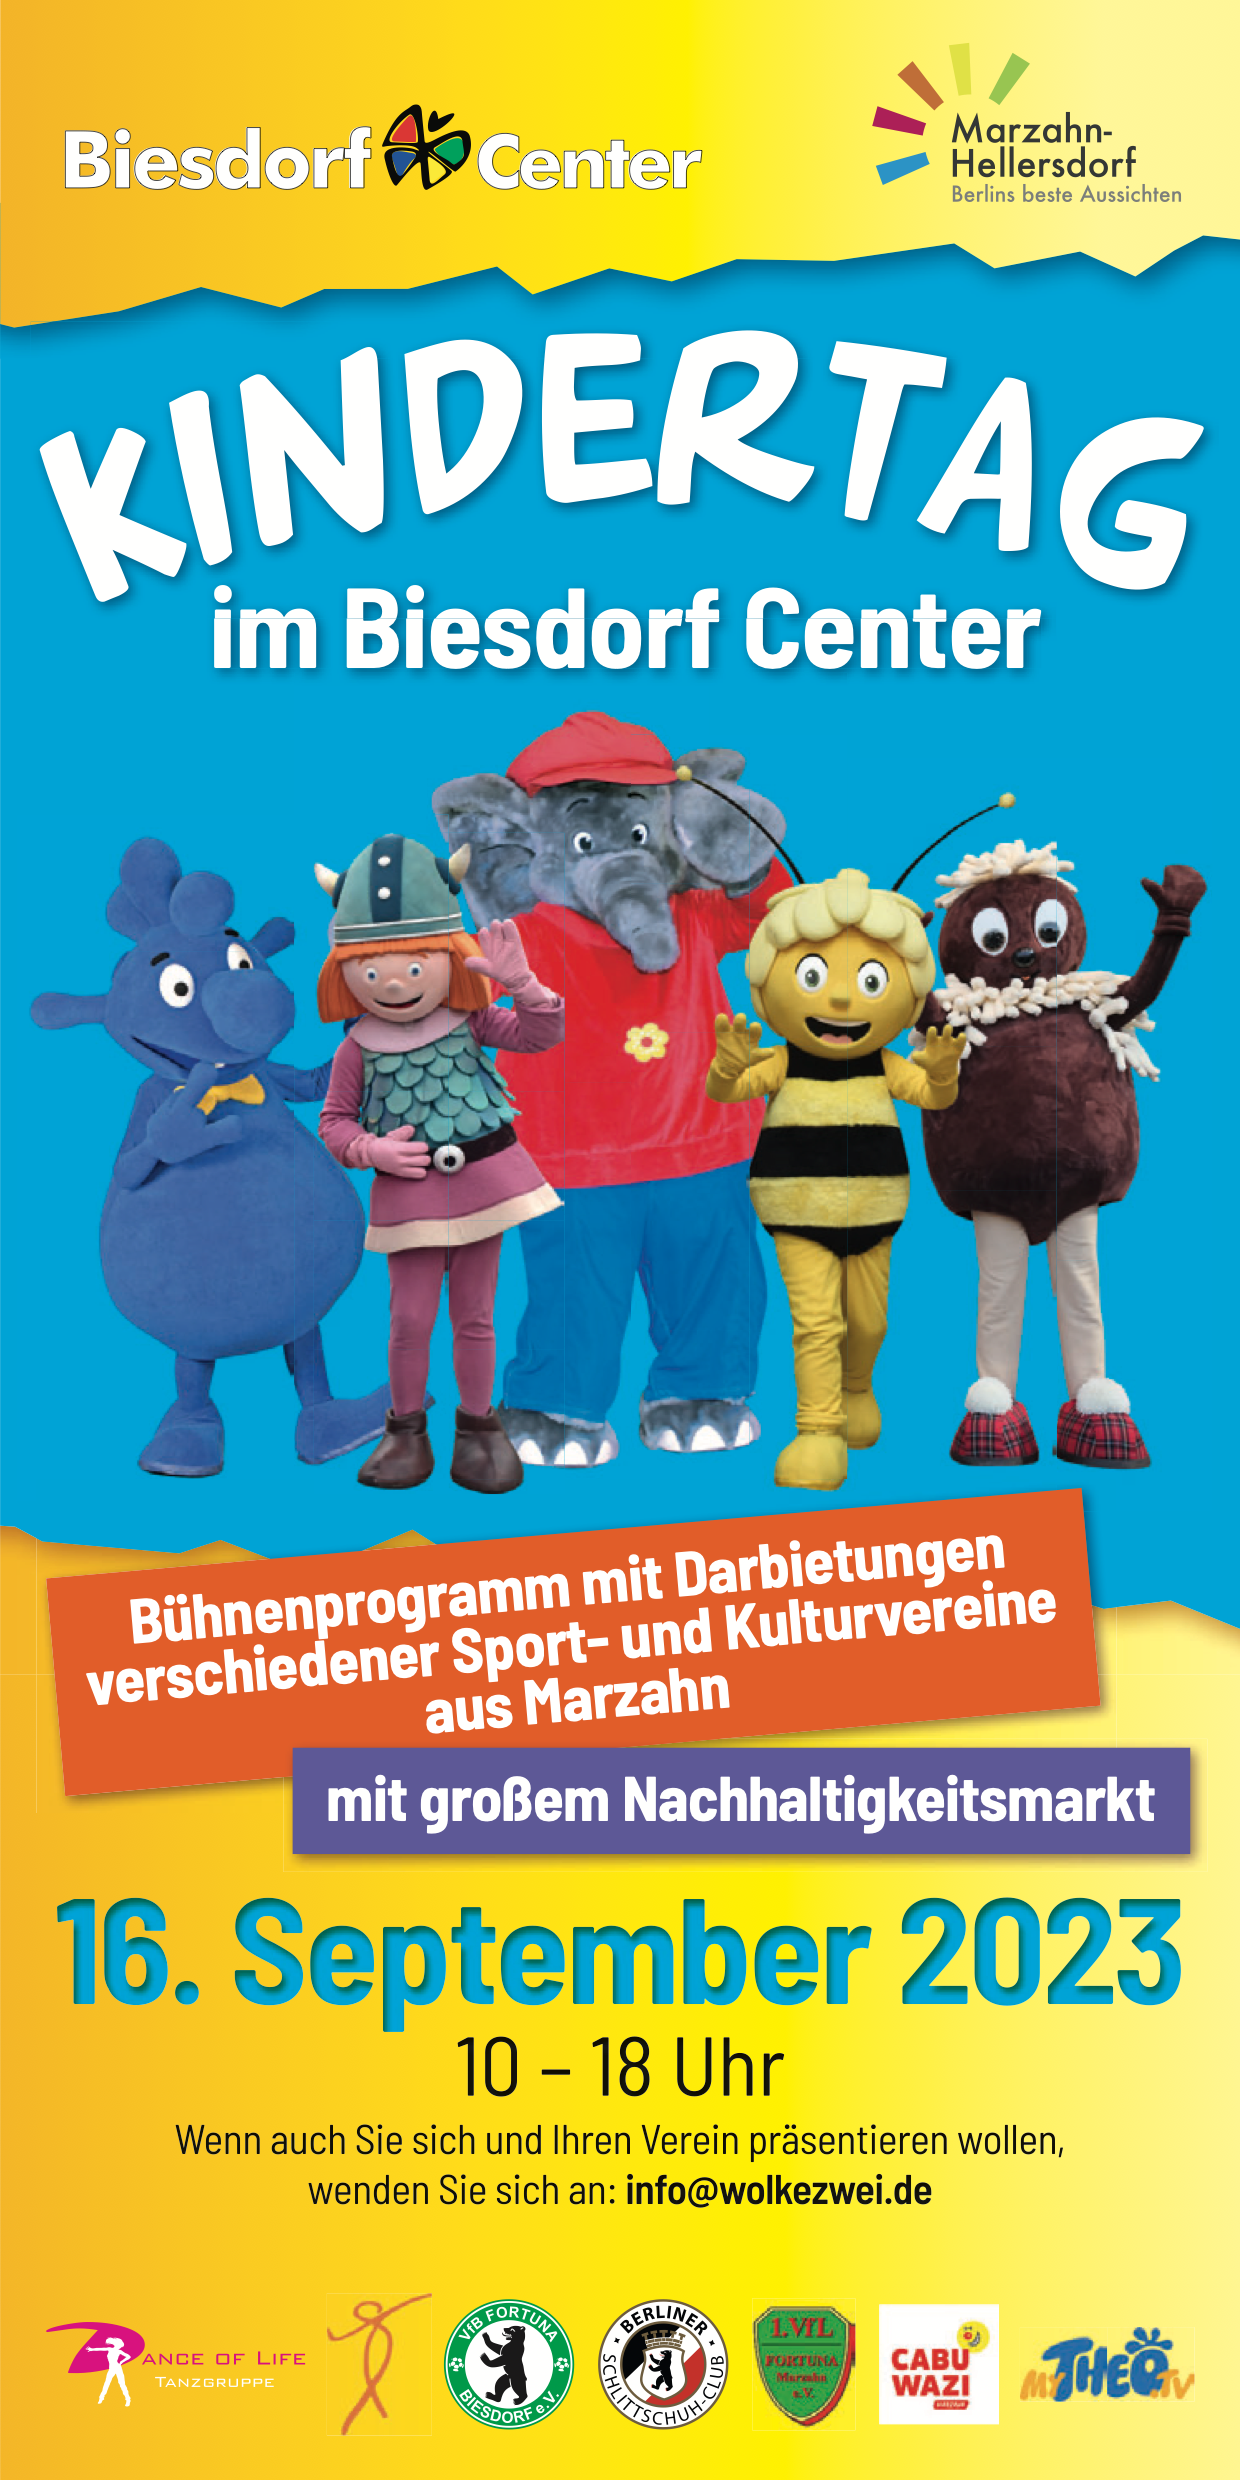 https://www.fortuna-biesdorf.de/wp-content/uploads/2023/09/Programmflyer-Kinderfest-Biesdorf-Center-16Sep23.png